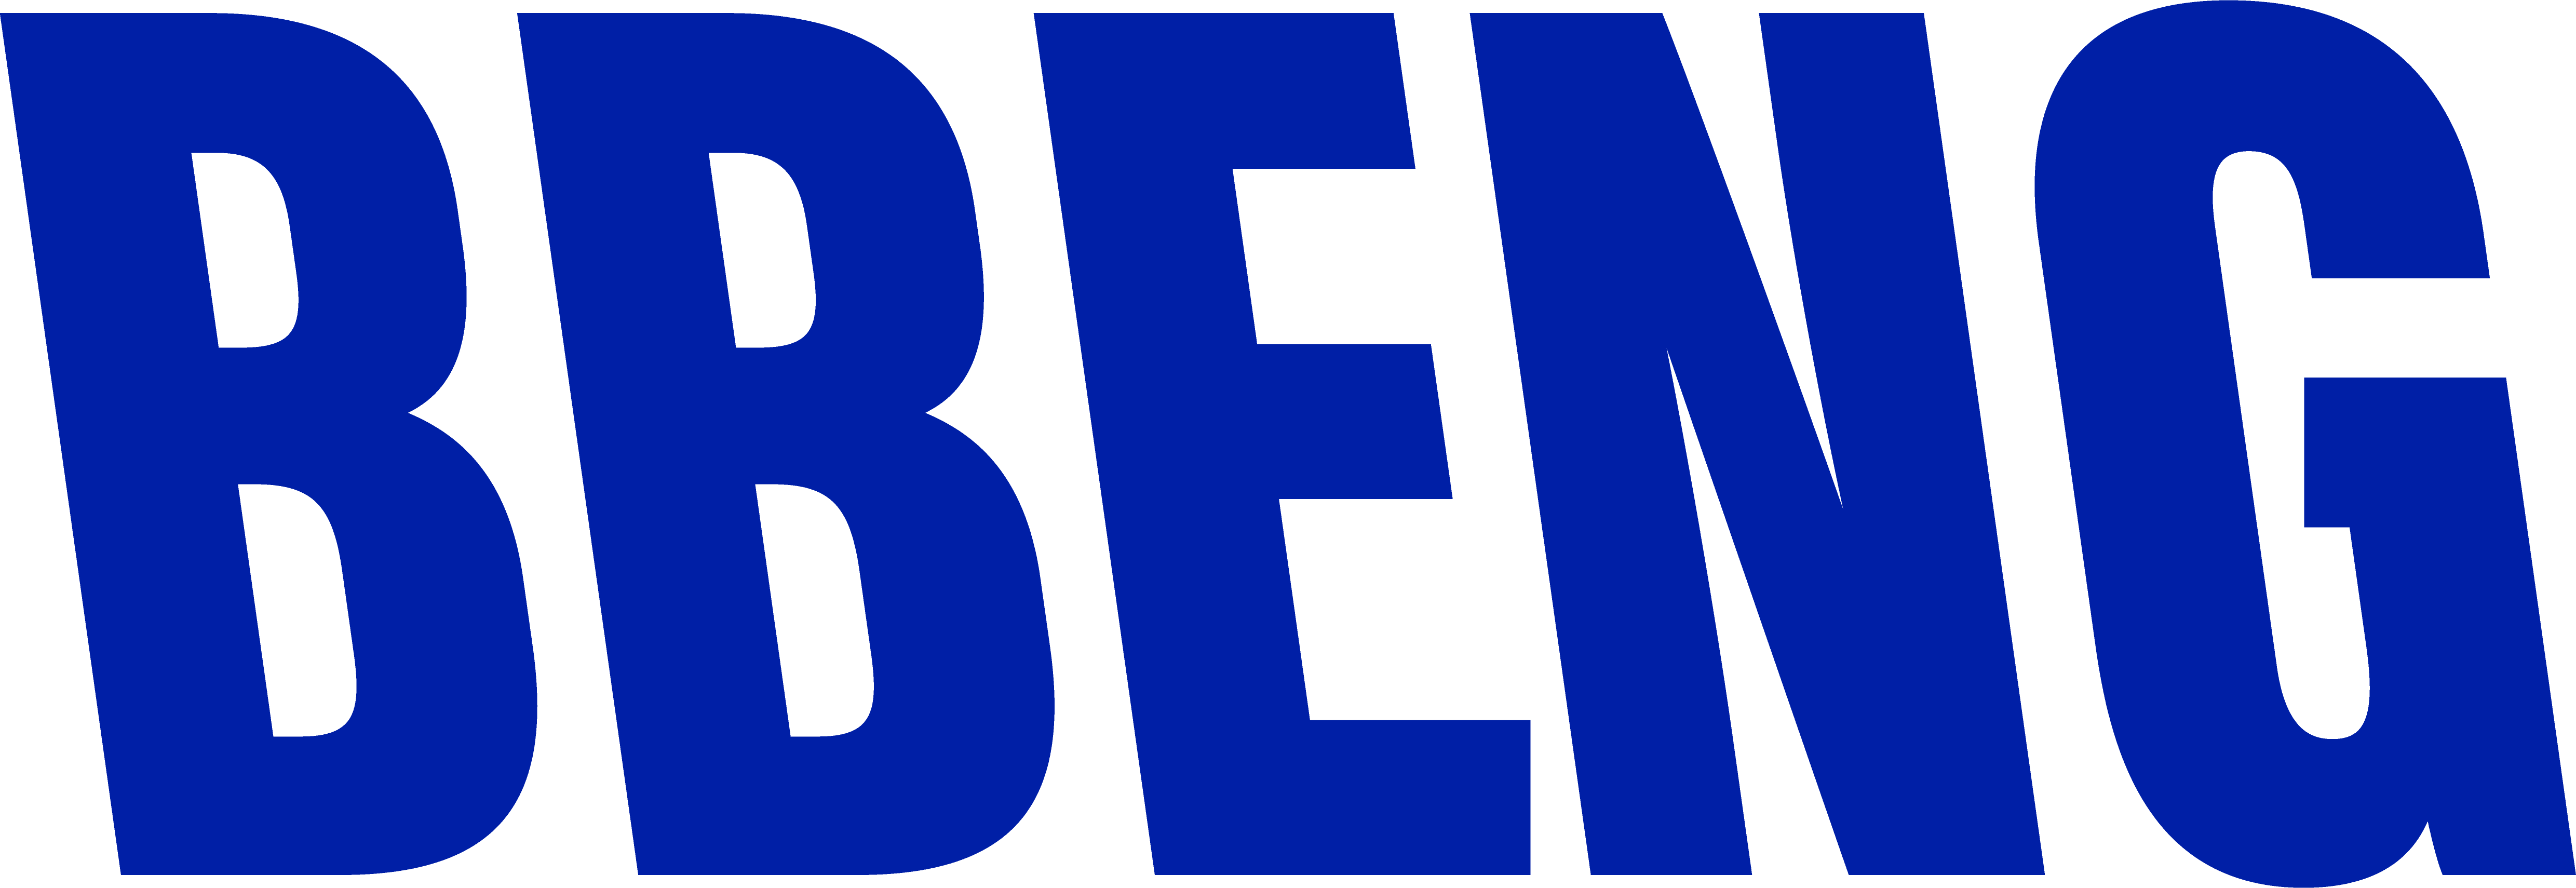 BBENG logo